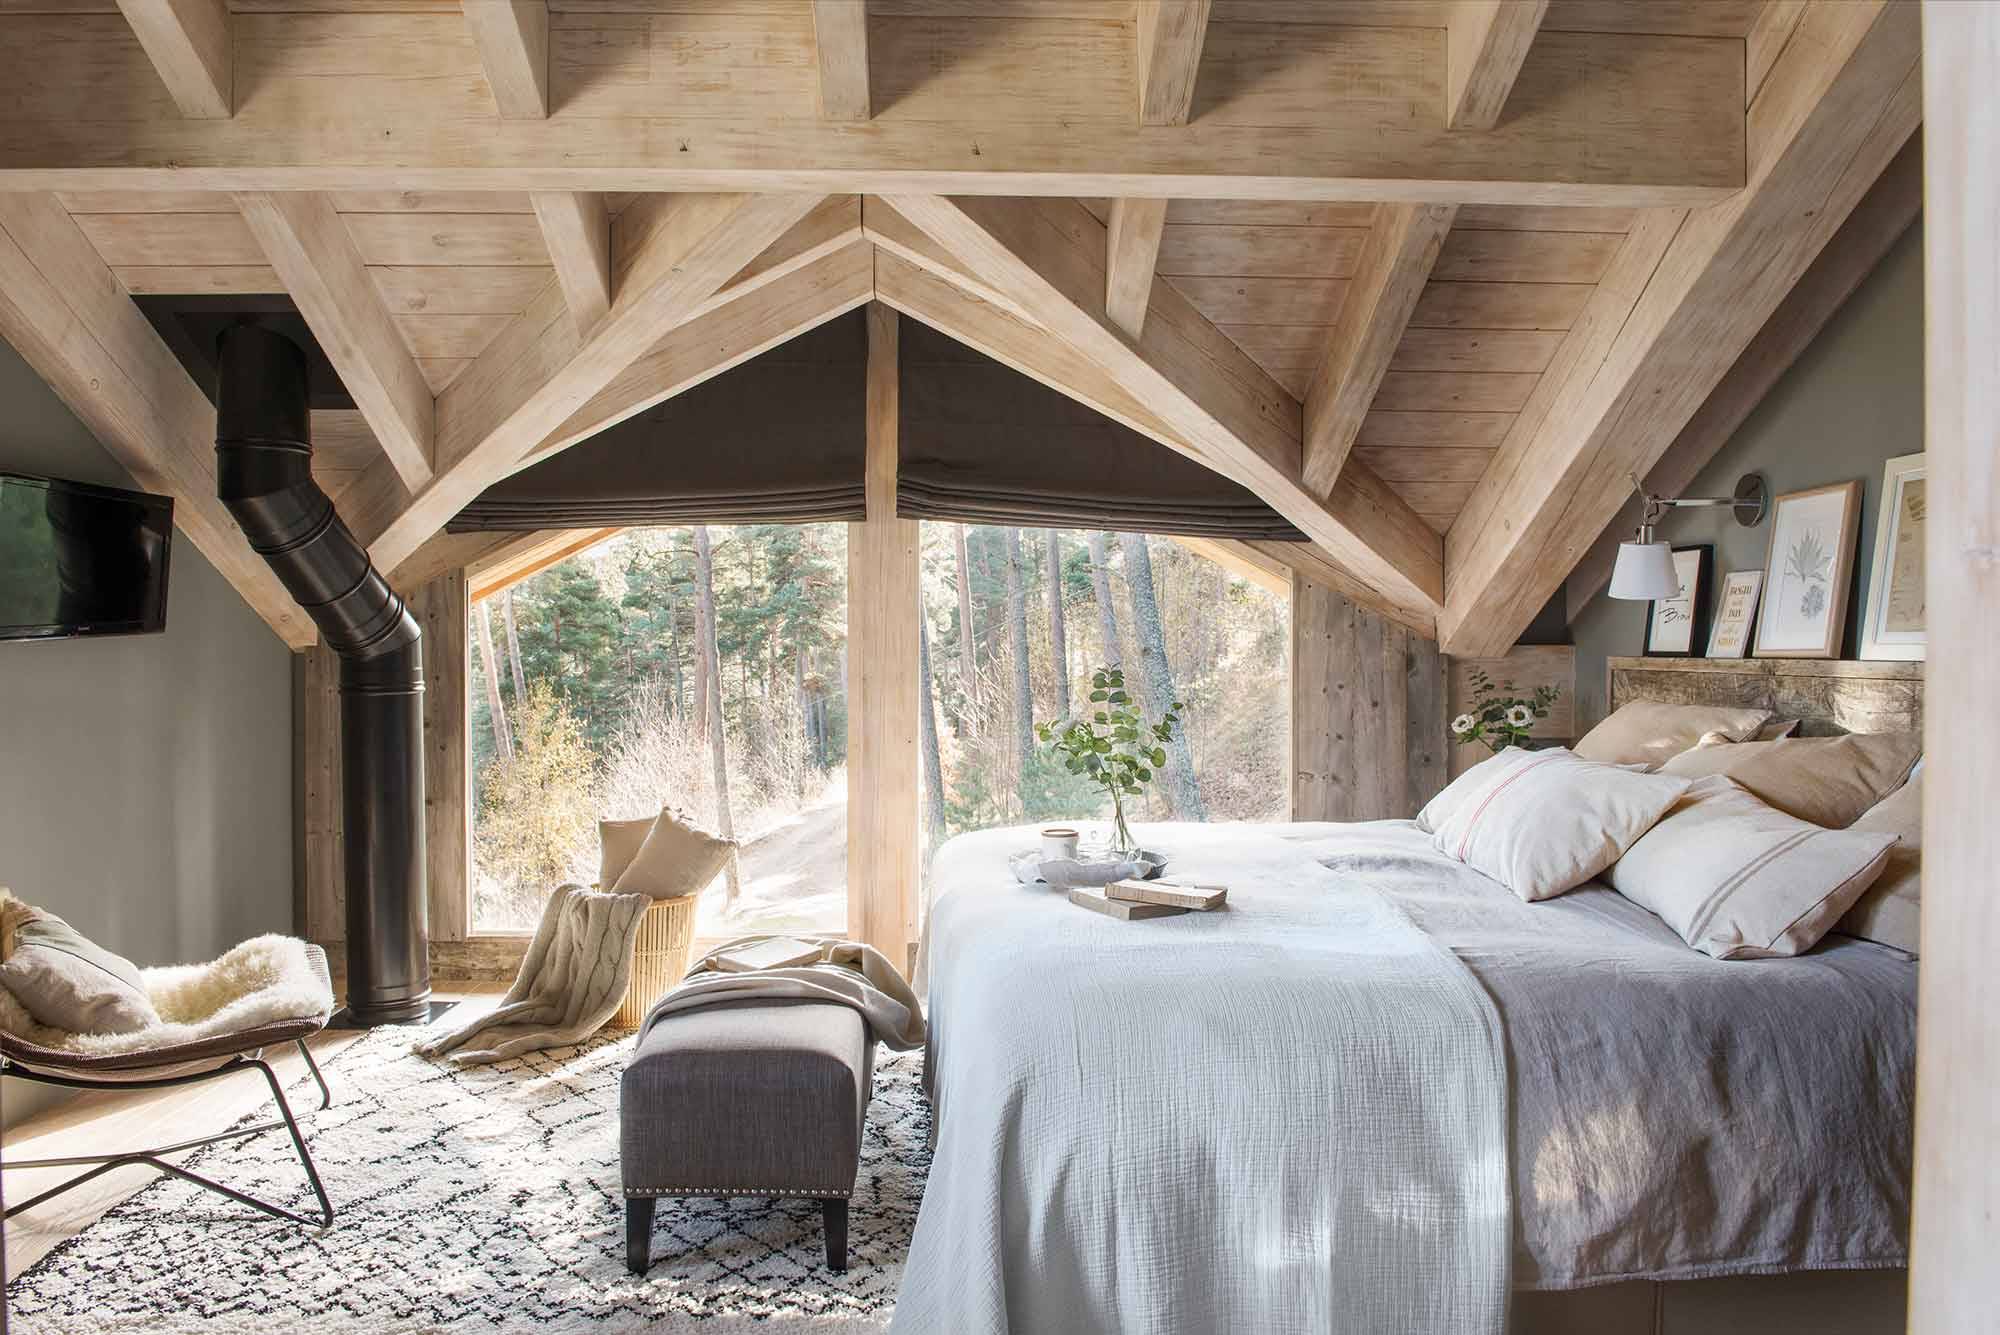 Casas en el bosque. Dormitorio rústico con techos abuhardillados de madera. 